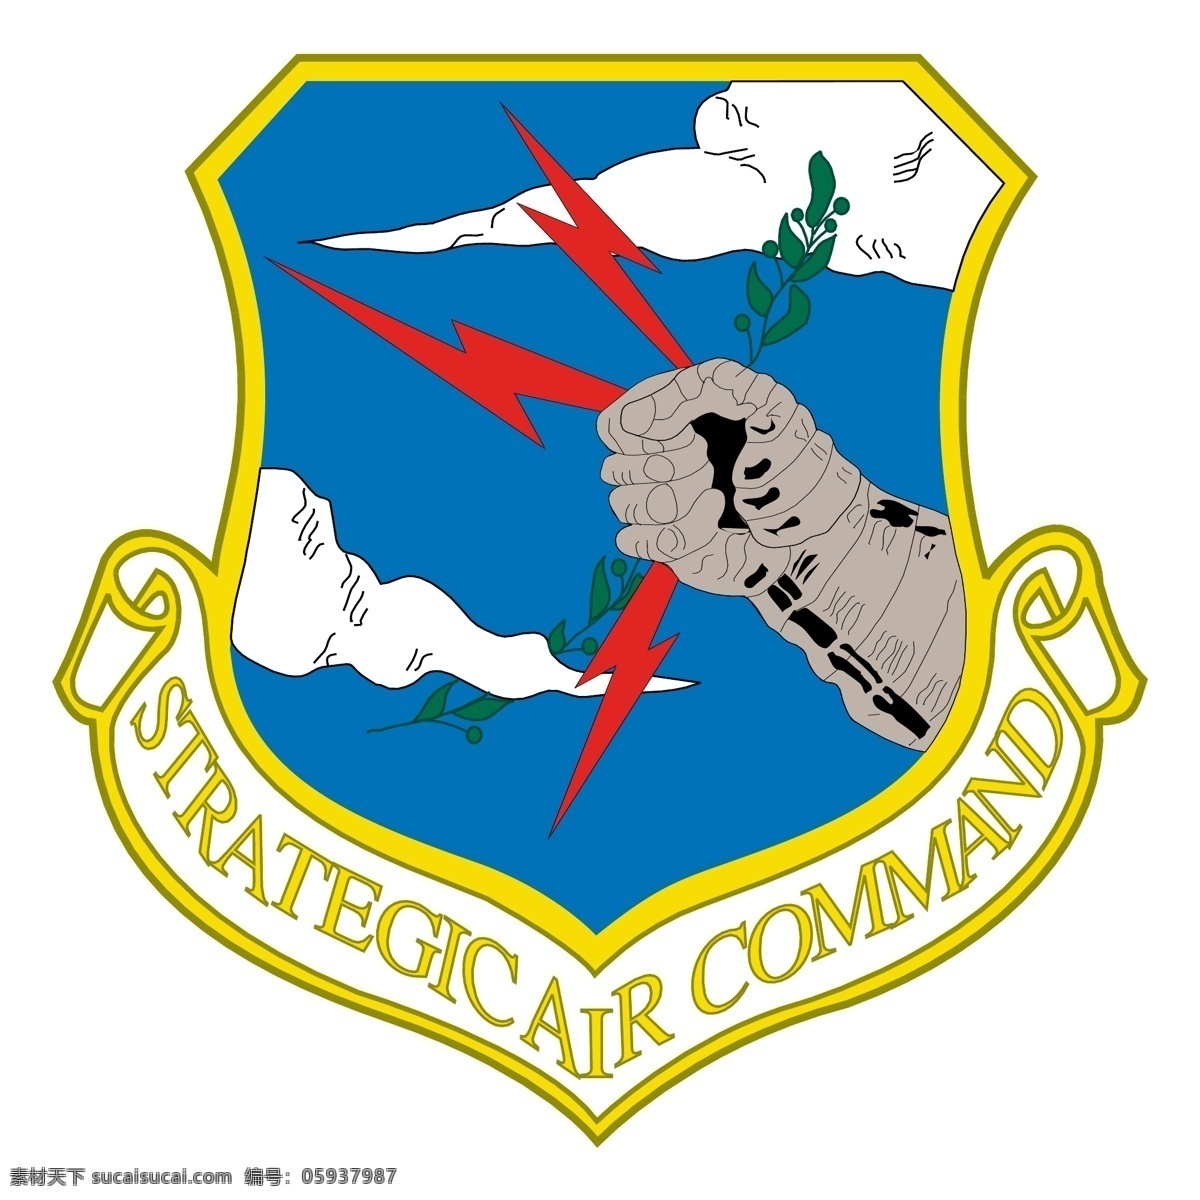 战略 空军 司令部 标识 公司 免费 品牌 品牌标识 商标 矢量标志下载 免费矢量标识 矢量 psd源文件 logo设计